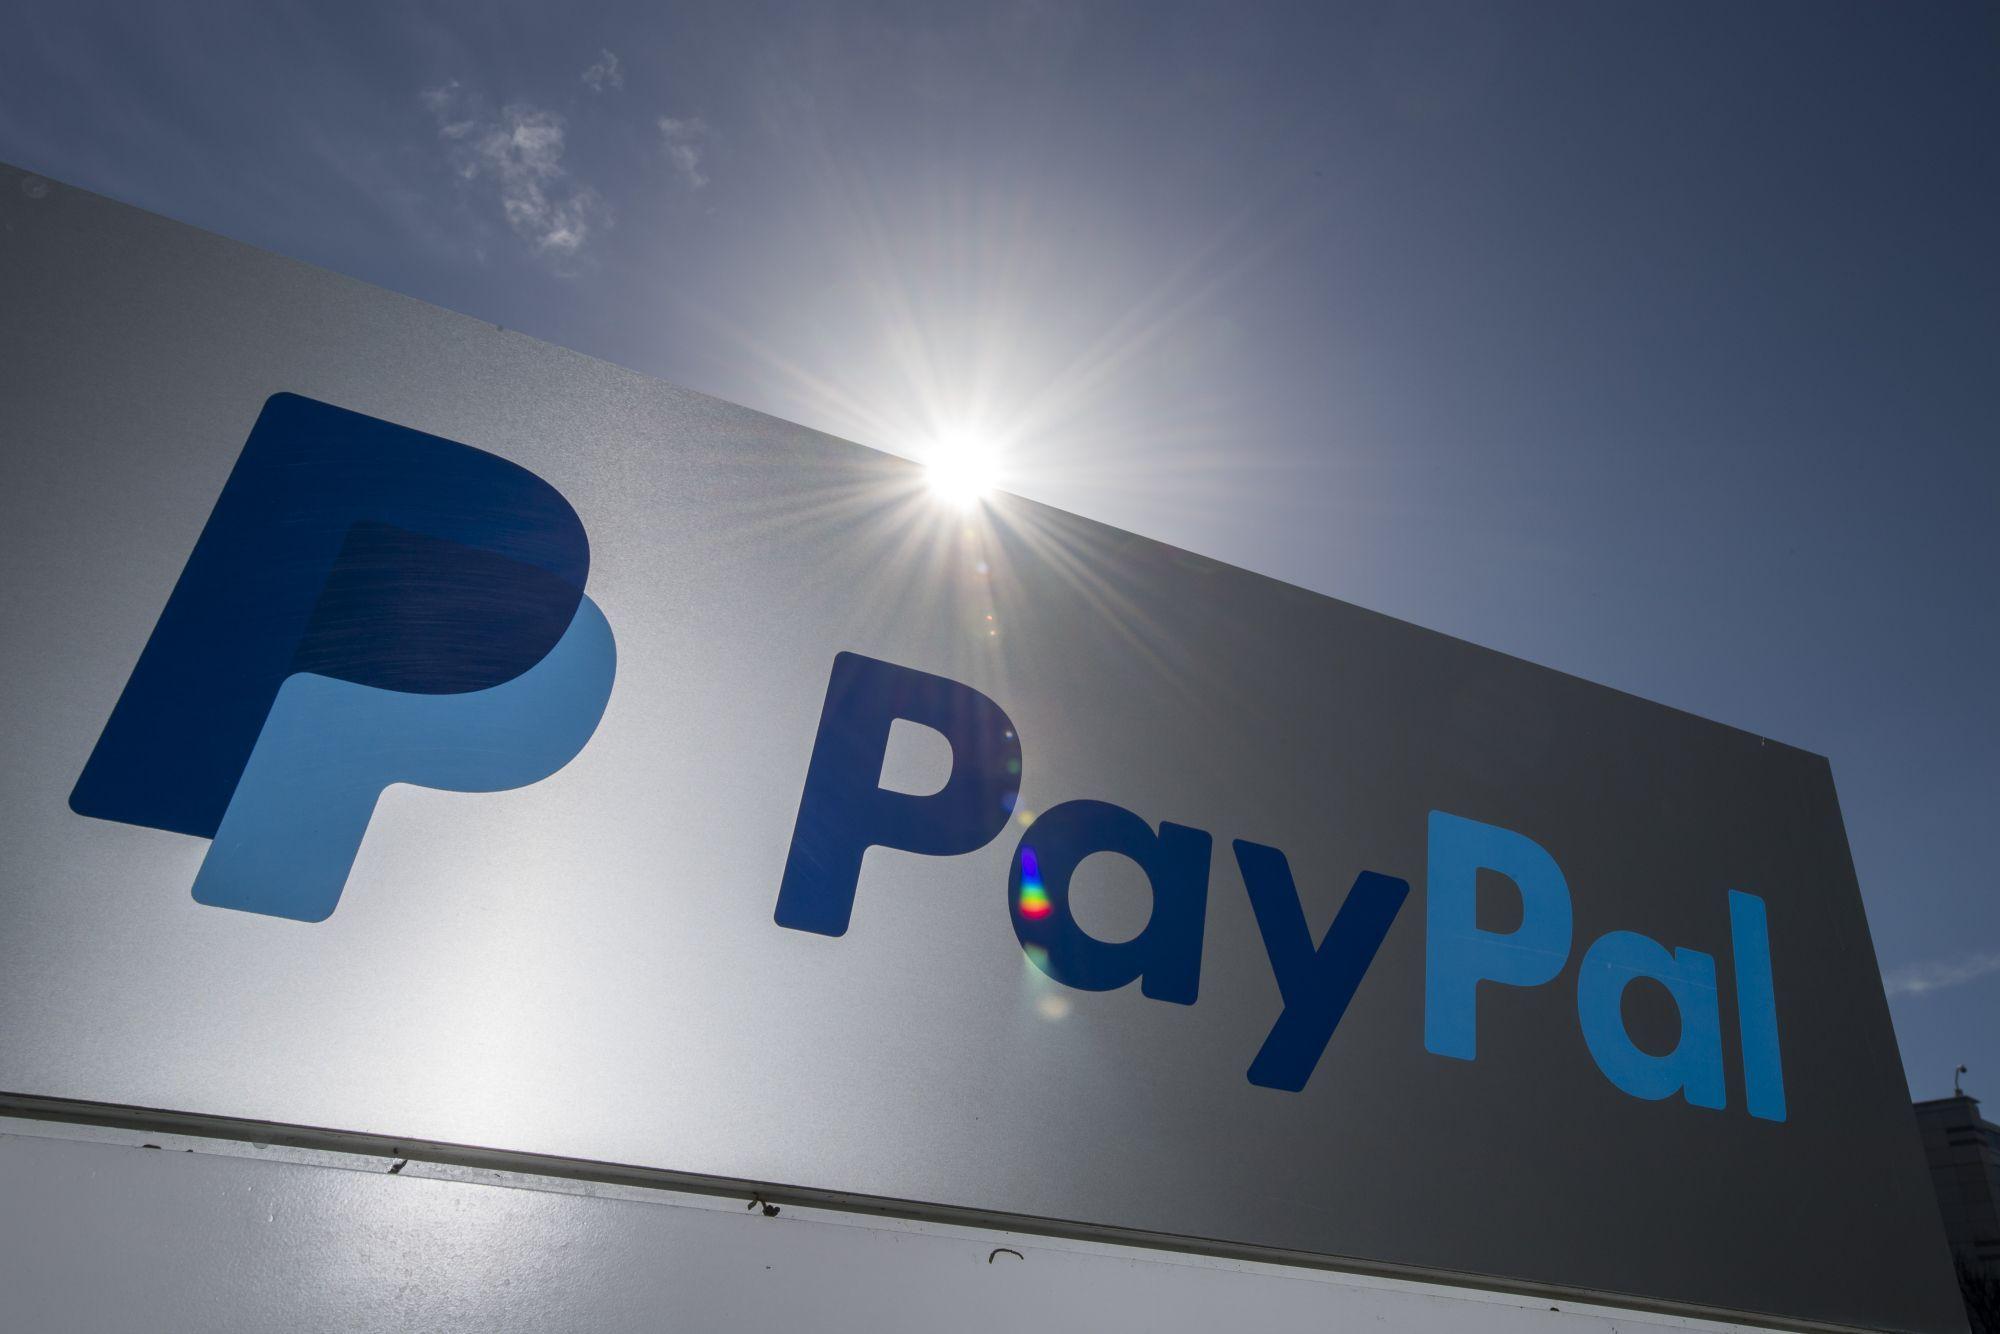 Регистрация в PayPal и привязка платежной карты